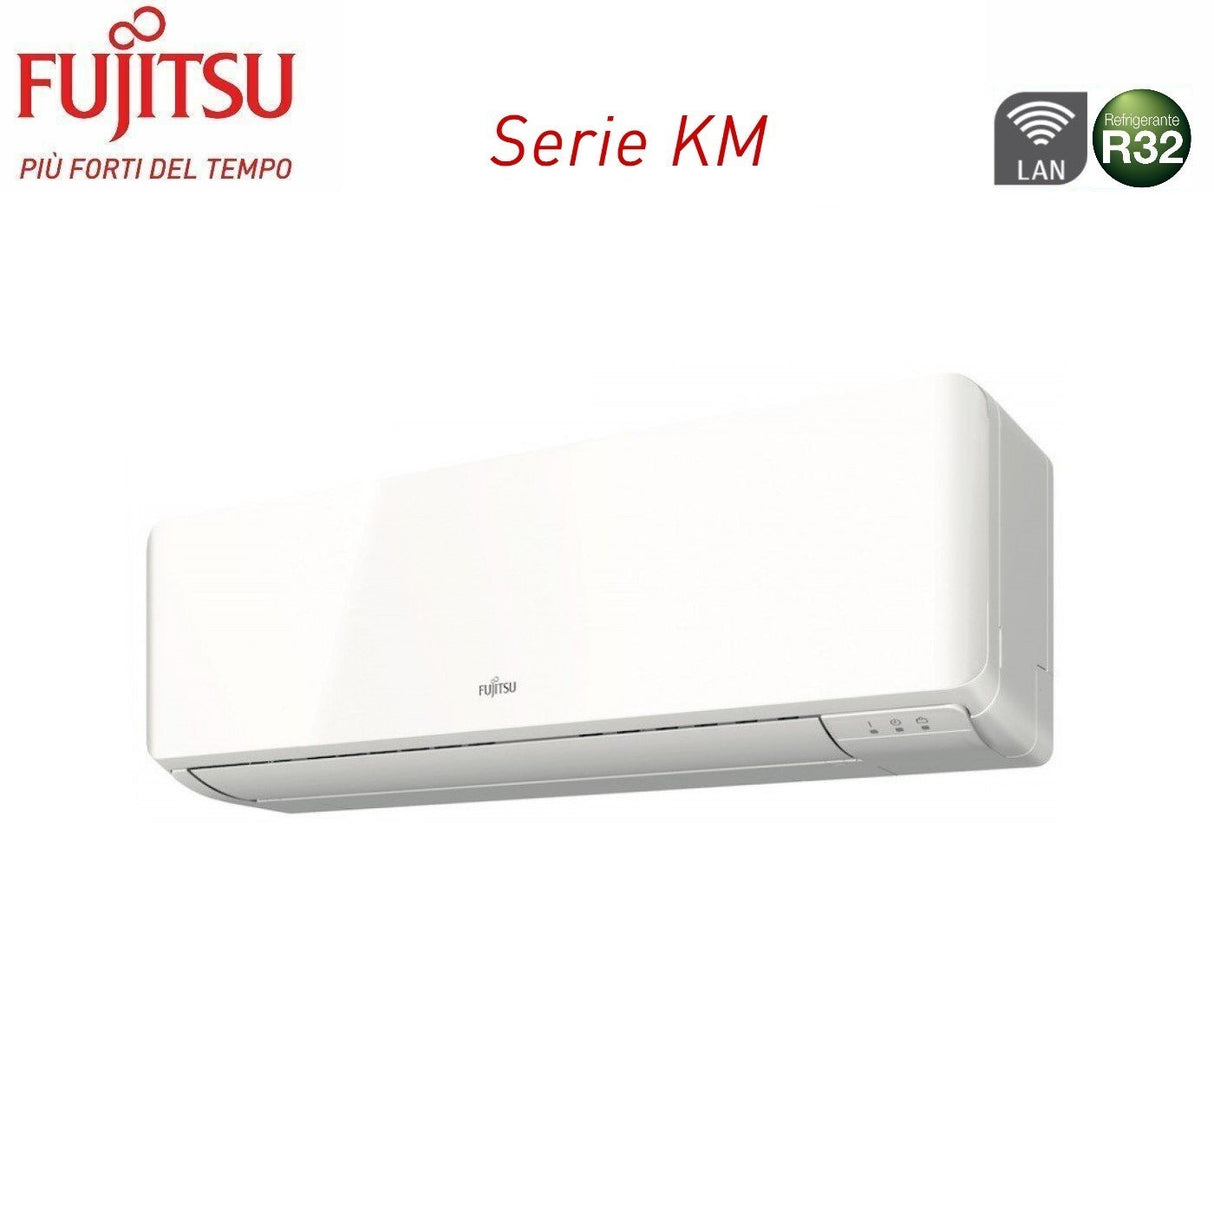 immagine-3-fujitsu-climatizzatore-condizionatore-fujitsu-dual-split-inverter-serie-km-712-con-aoyg14kbta2-r-32-wi-fi-integrato-700012000